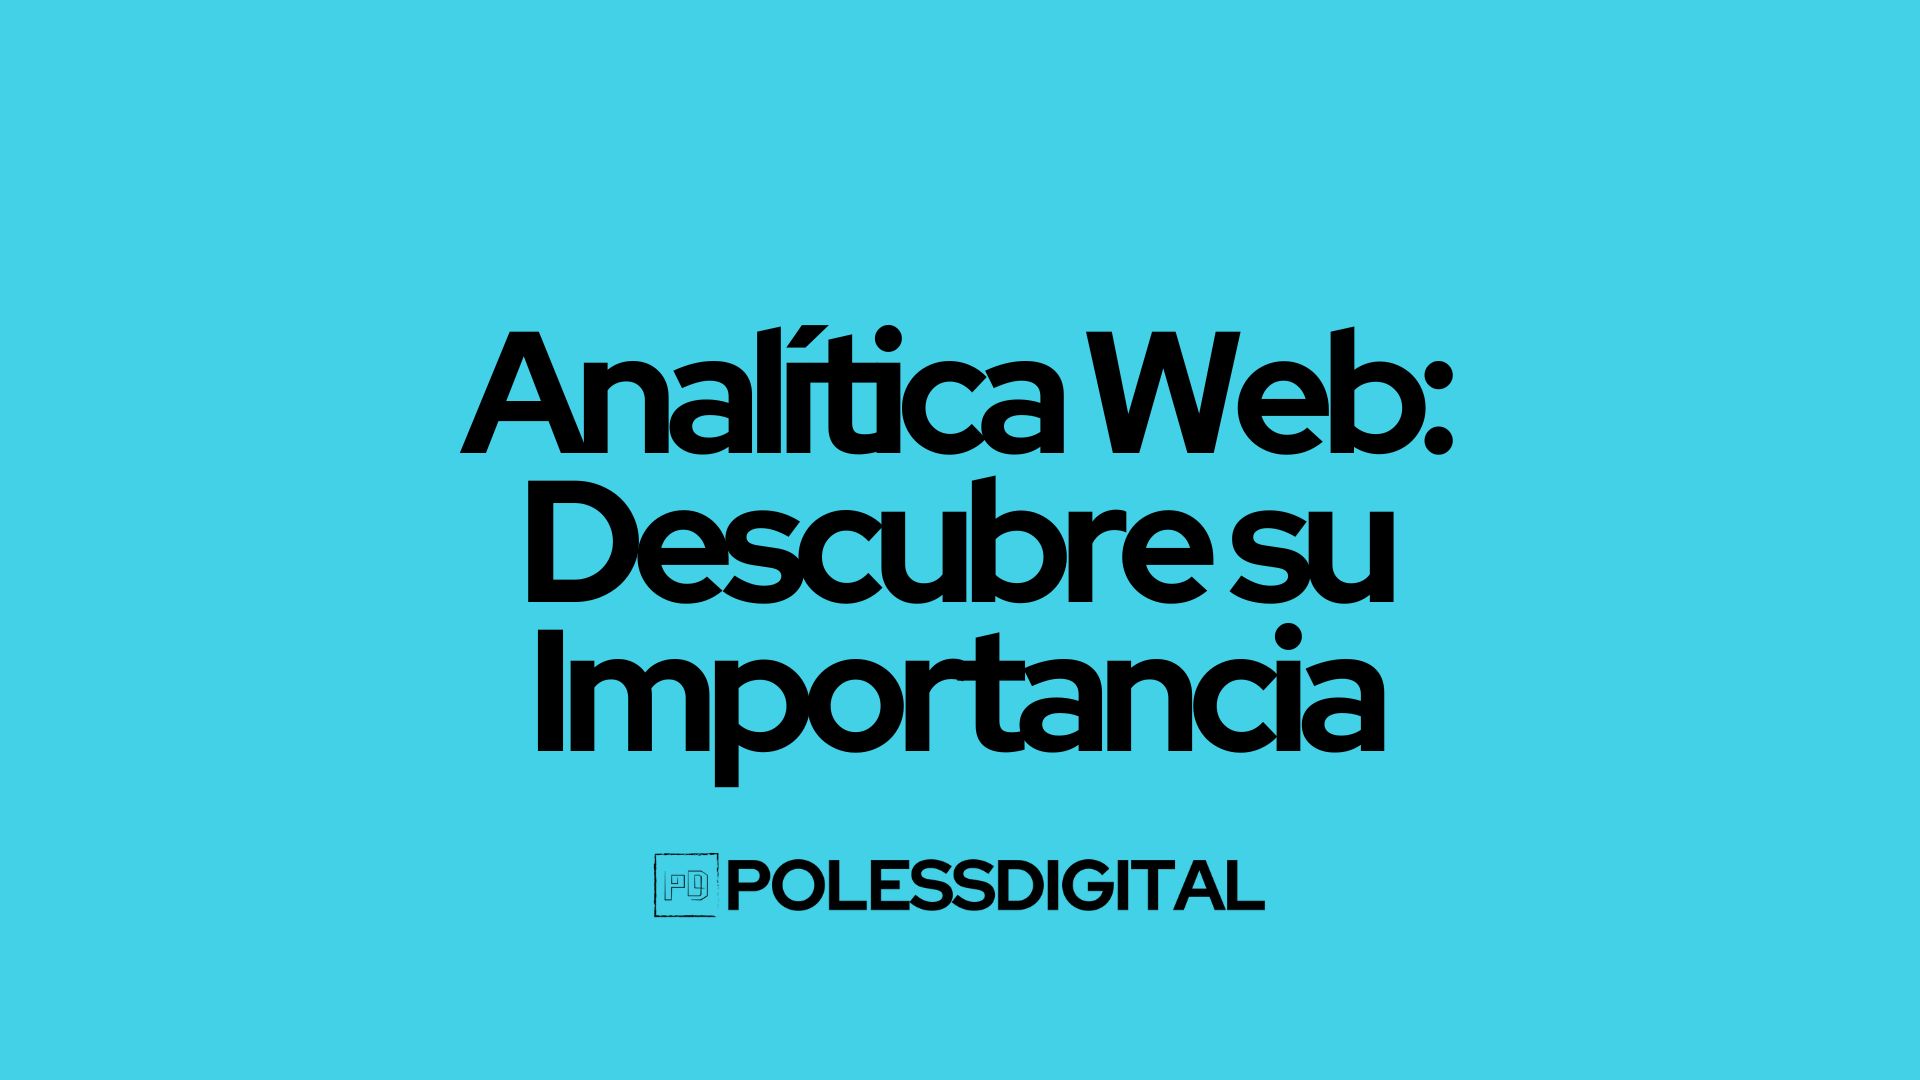 Analítica Web: Descubre su Importancia by polessdigital